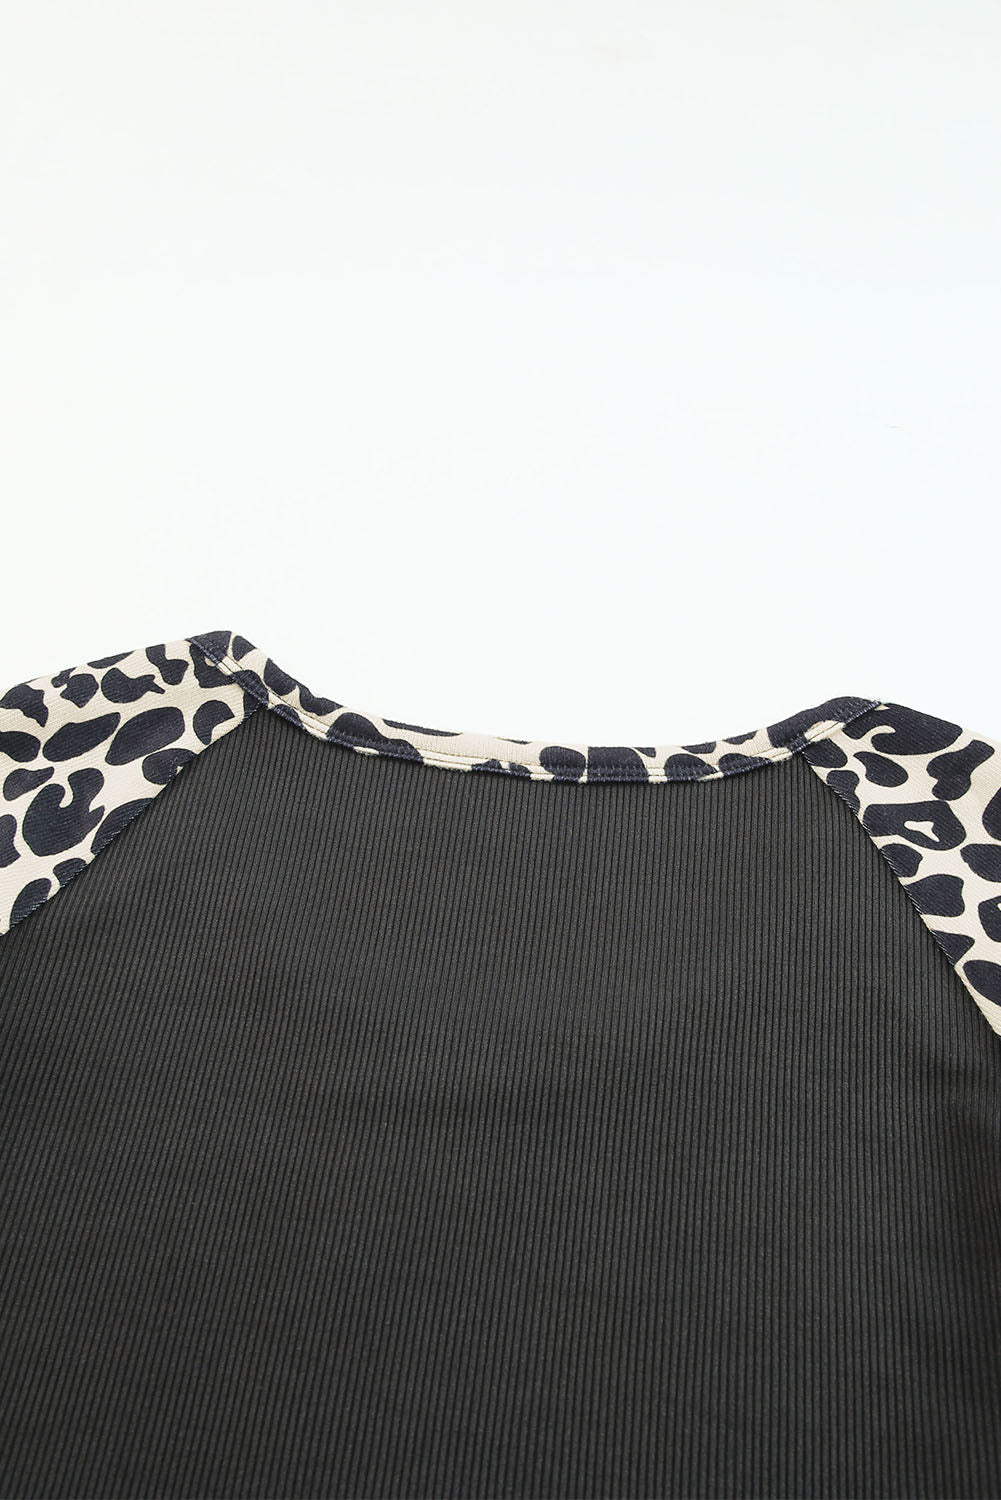 Haut léopard noir à manches courtes et découpes en blocs de couleurs